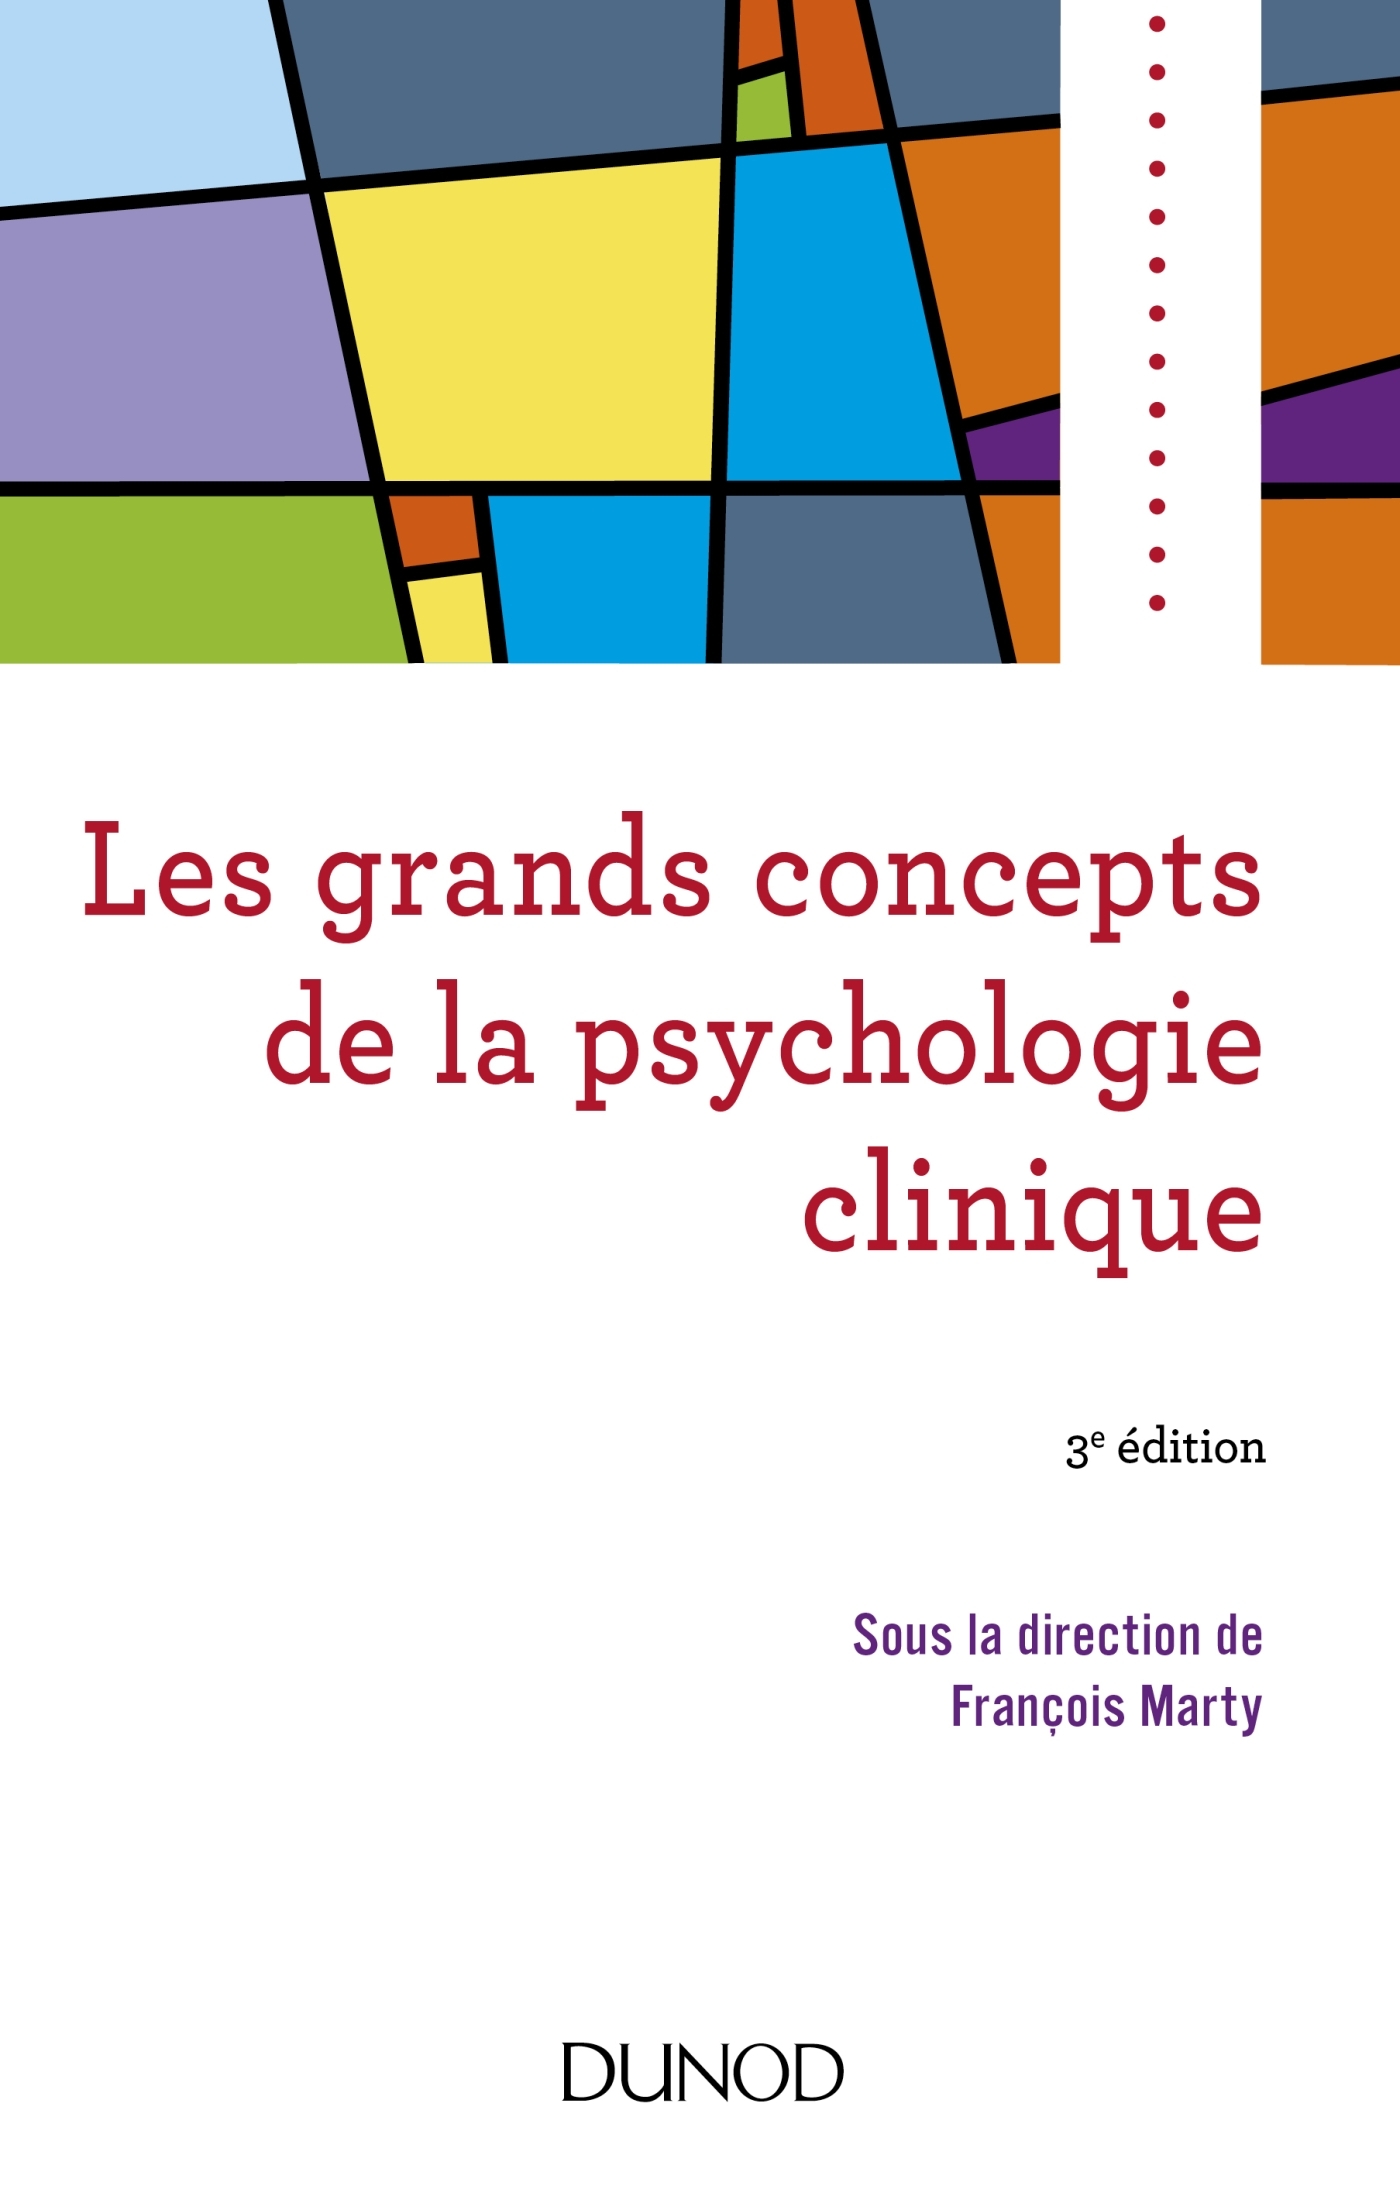 Les grands concepts de la psychologie clinique  Livre et ebook